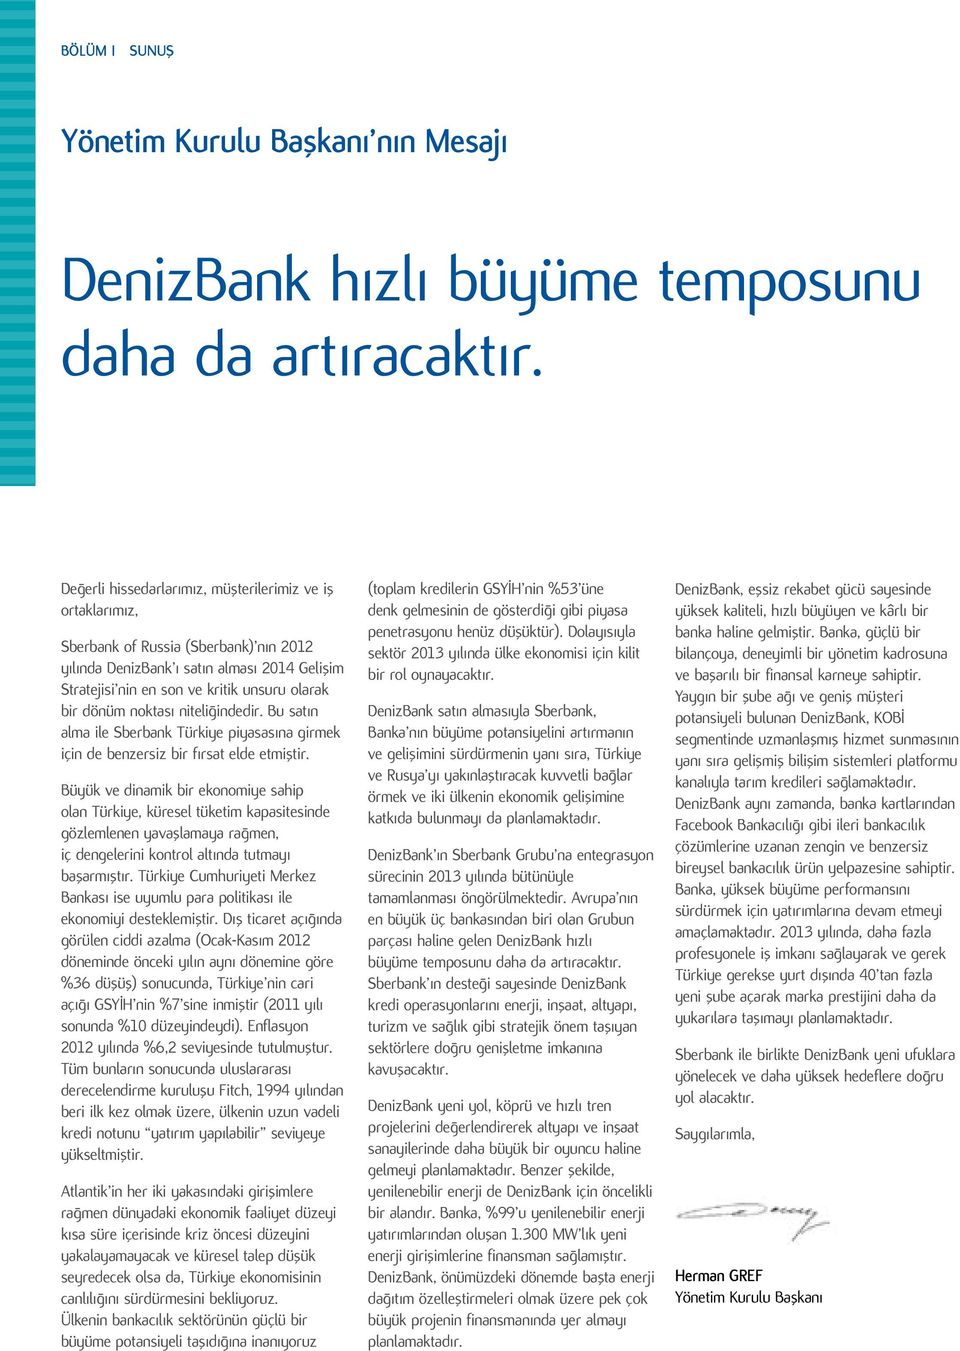 dönüm noktası niteliğindedir. Bu satın alma ile Sberbank Türkiye piyasasına girmek için de benzersiz bir fırsat elde etmiştir.